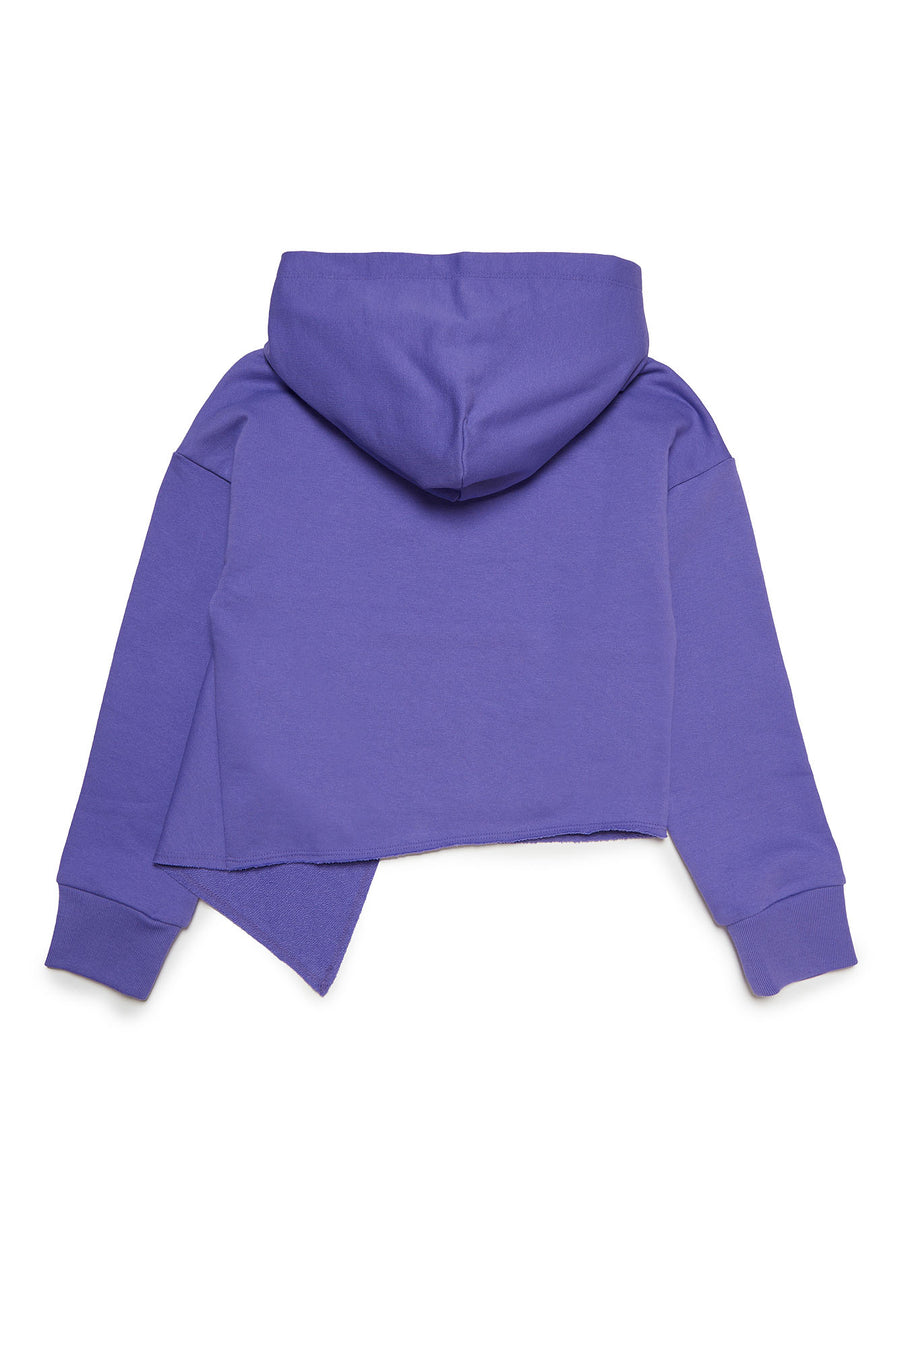 Flap purple hoodie sweatshirt by N21